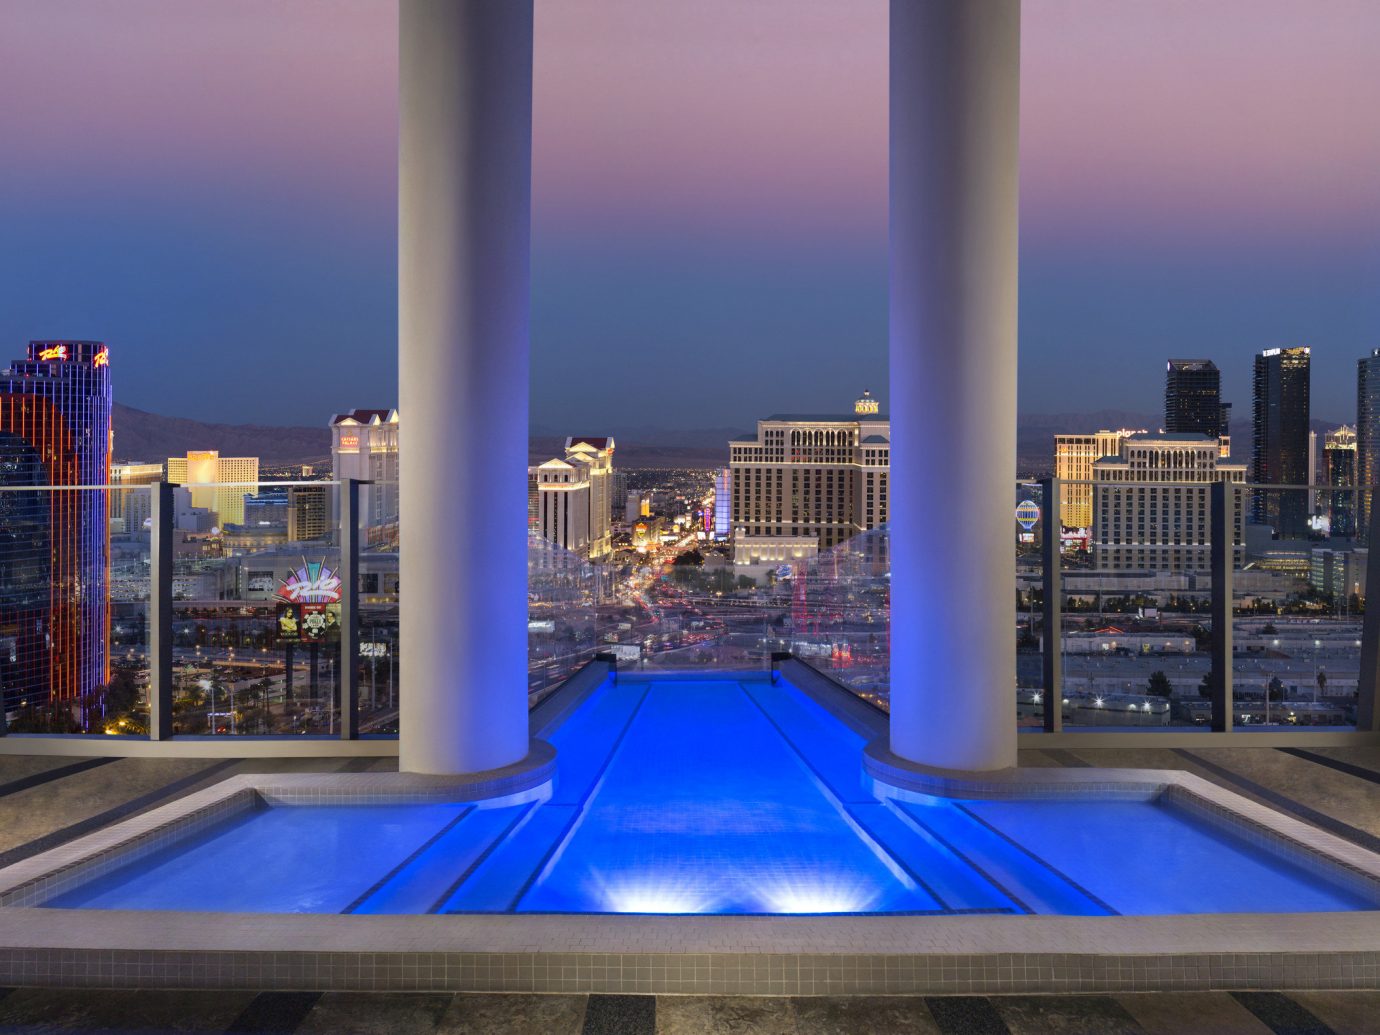 Pool in the Sky Villa, Palms Casino Resort in Las Vegas